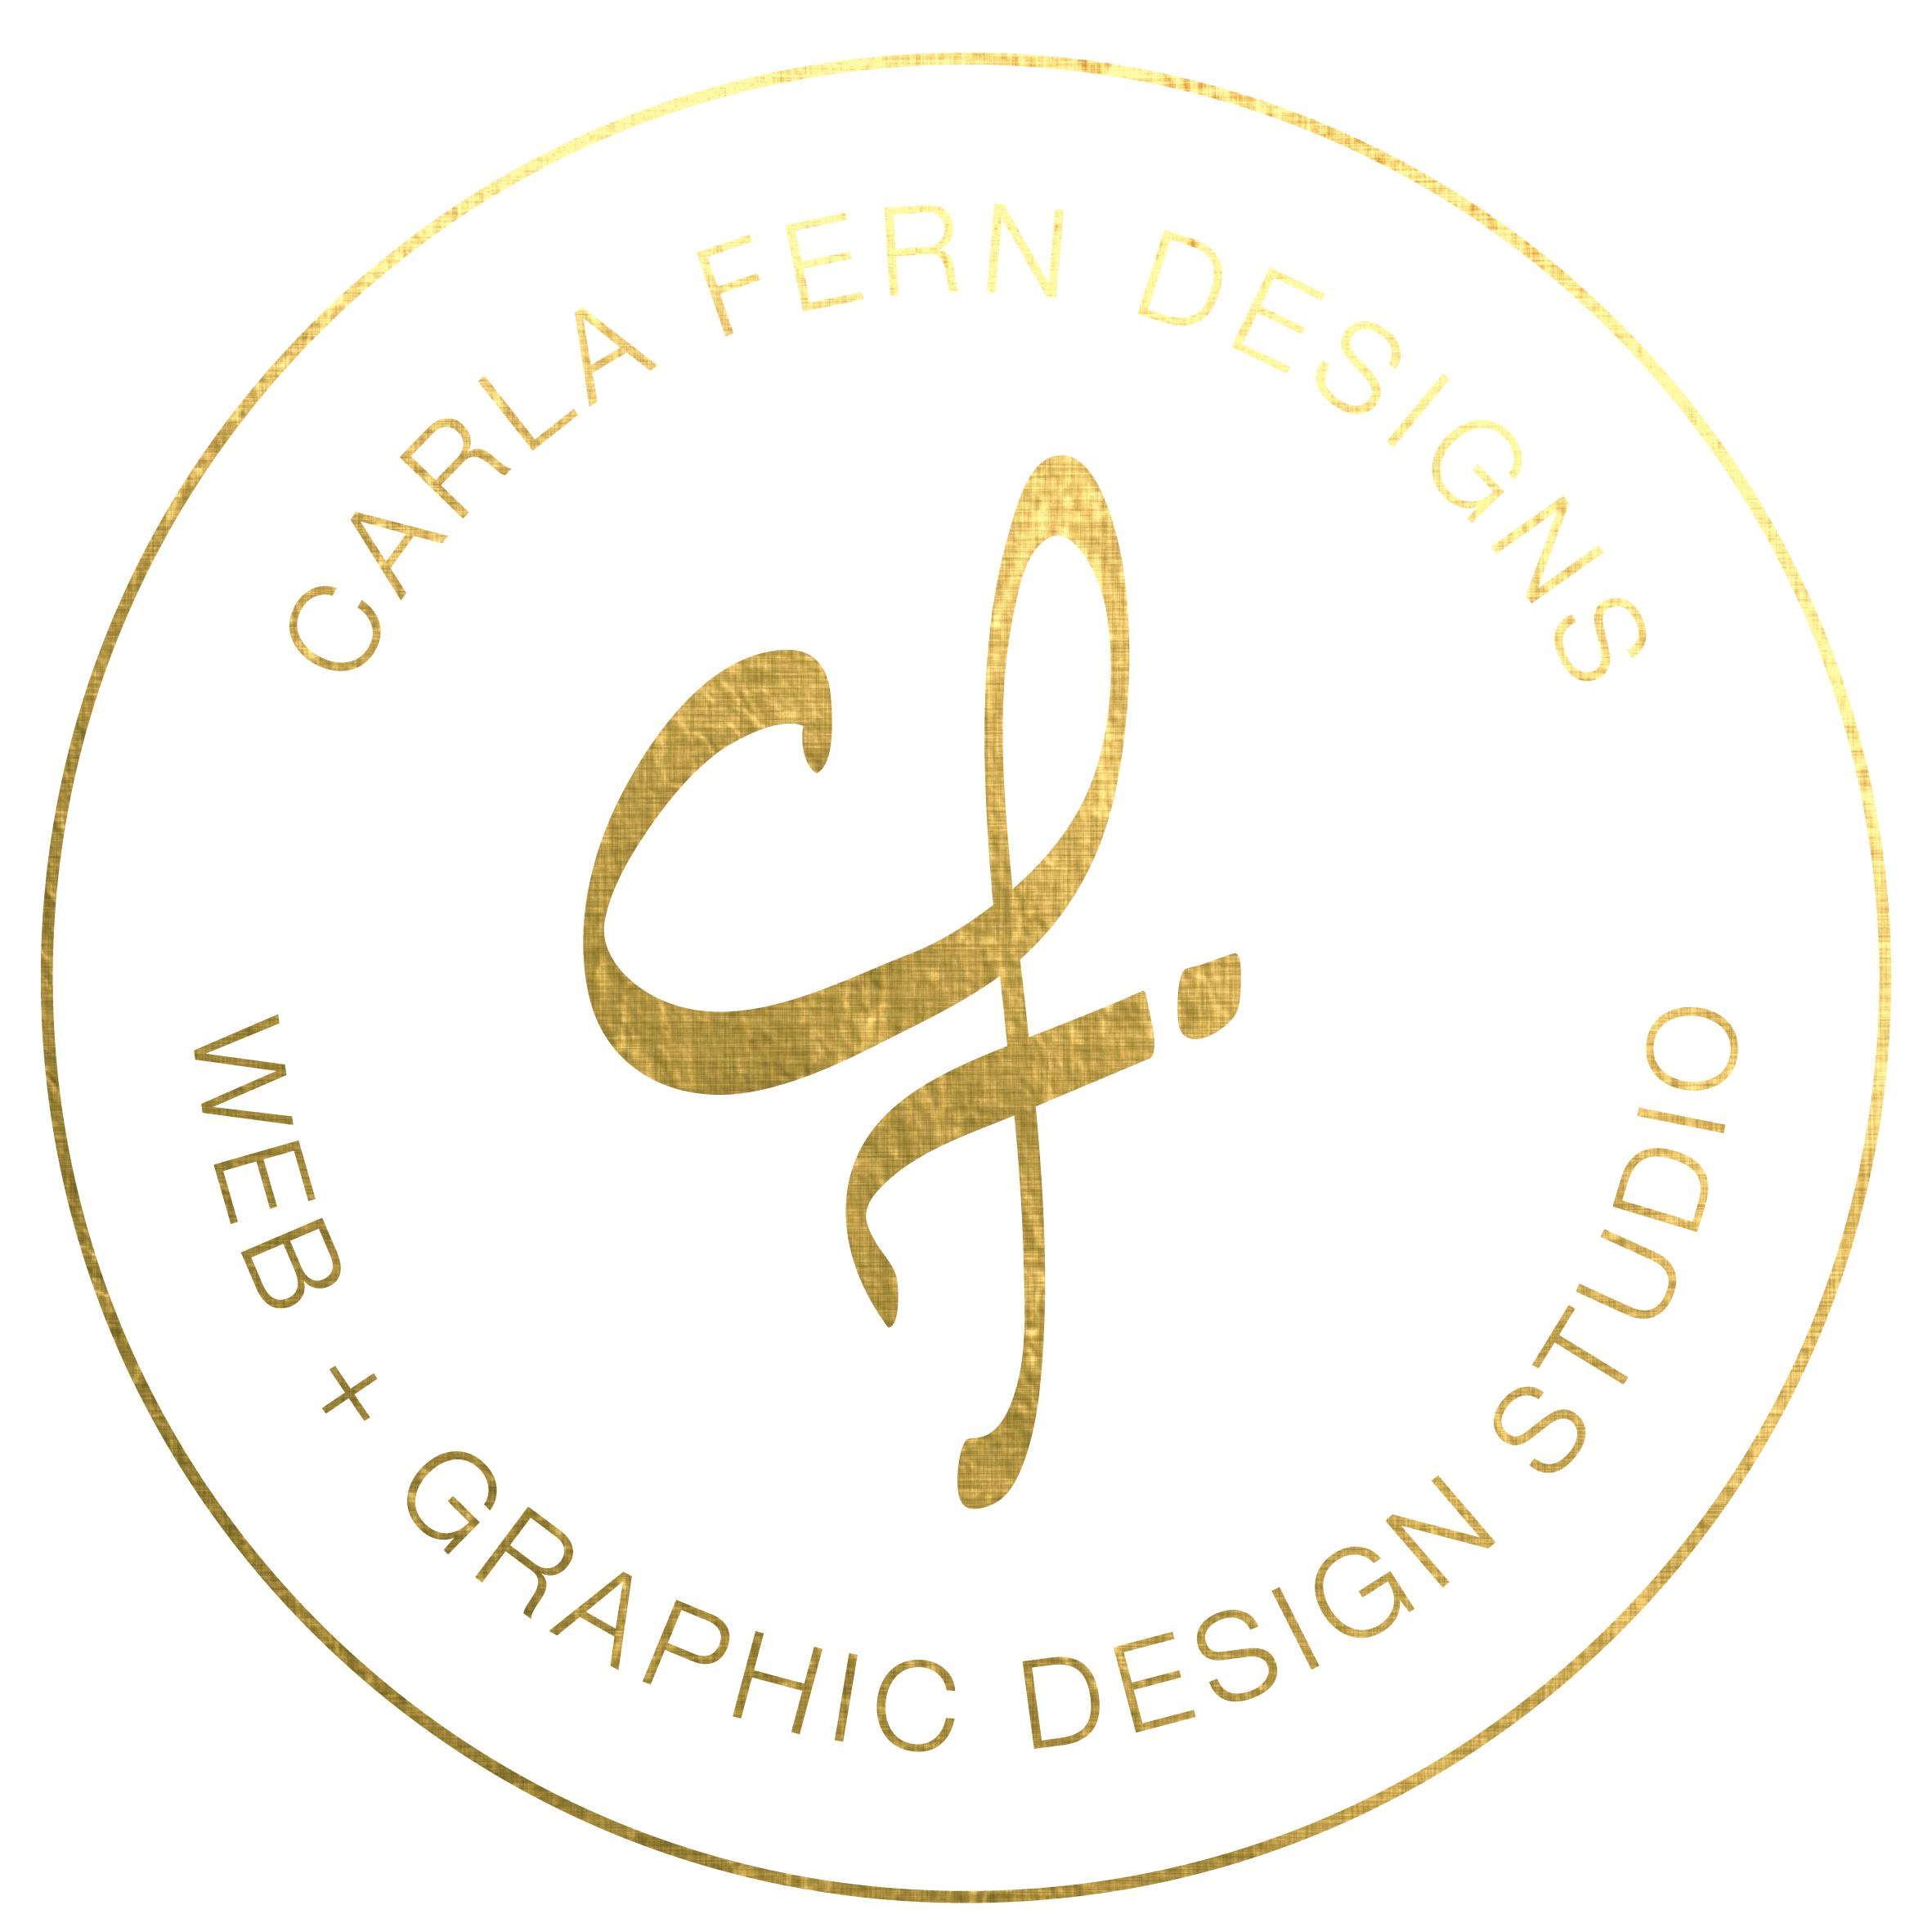 Carla Logo - Carla Fern Designs and Graphic Design Studio